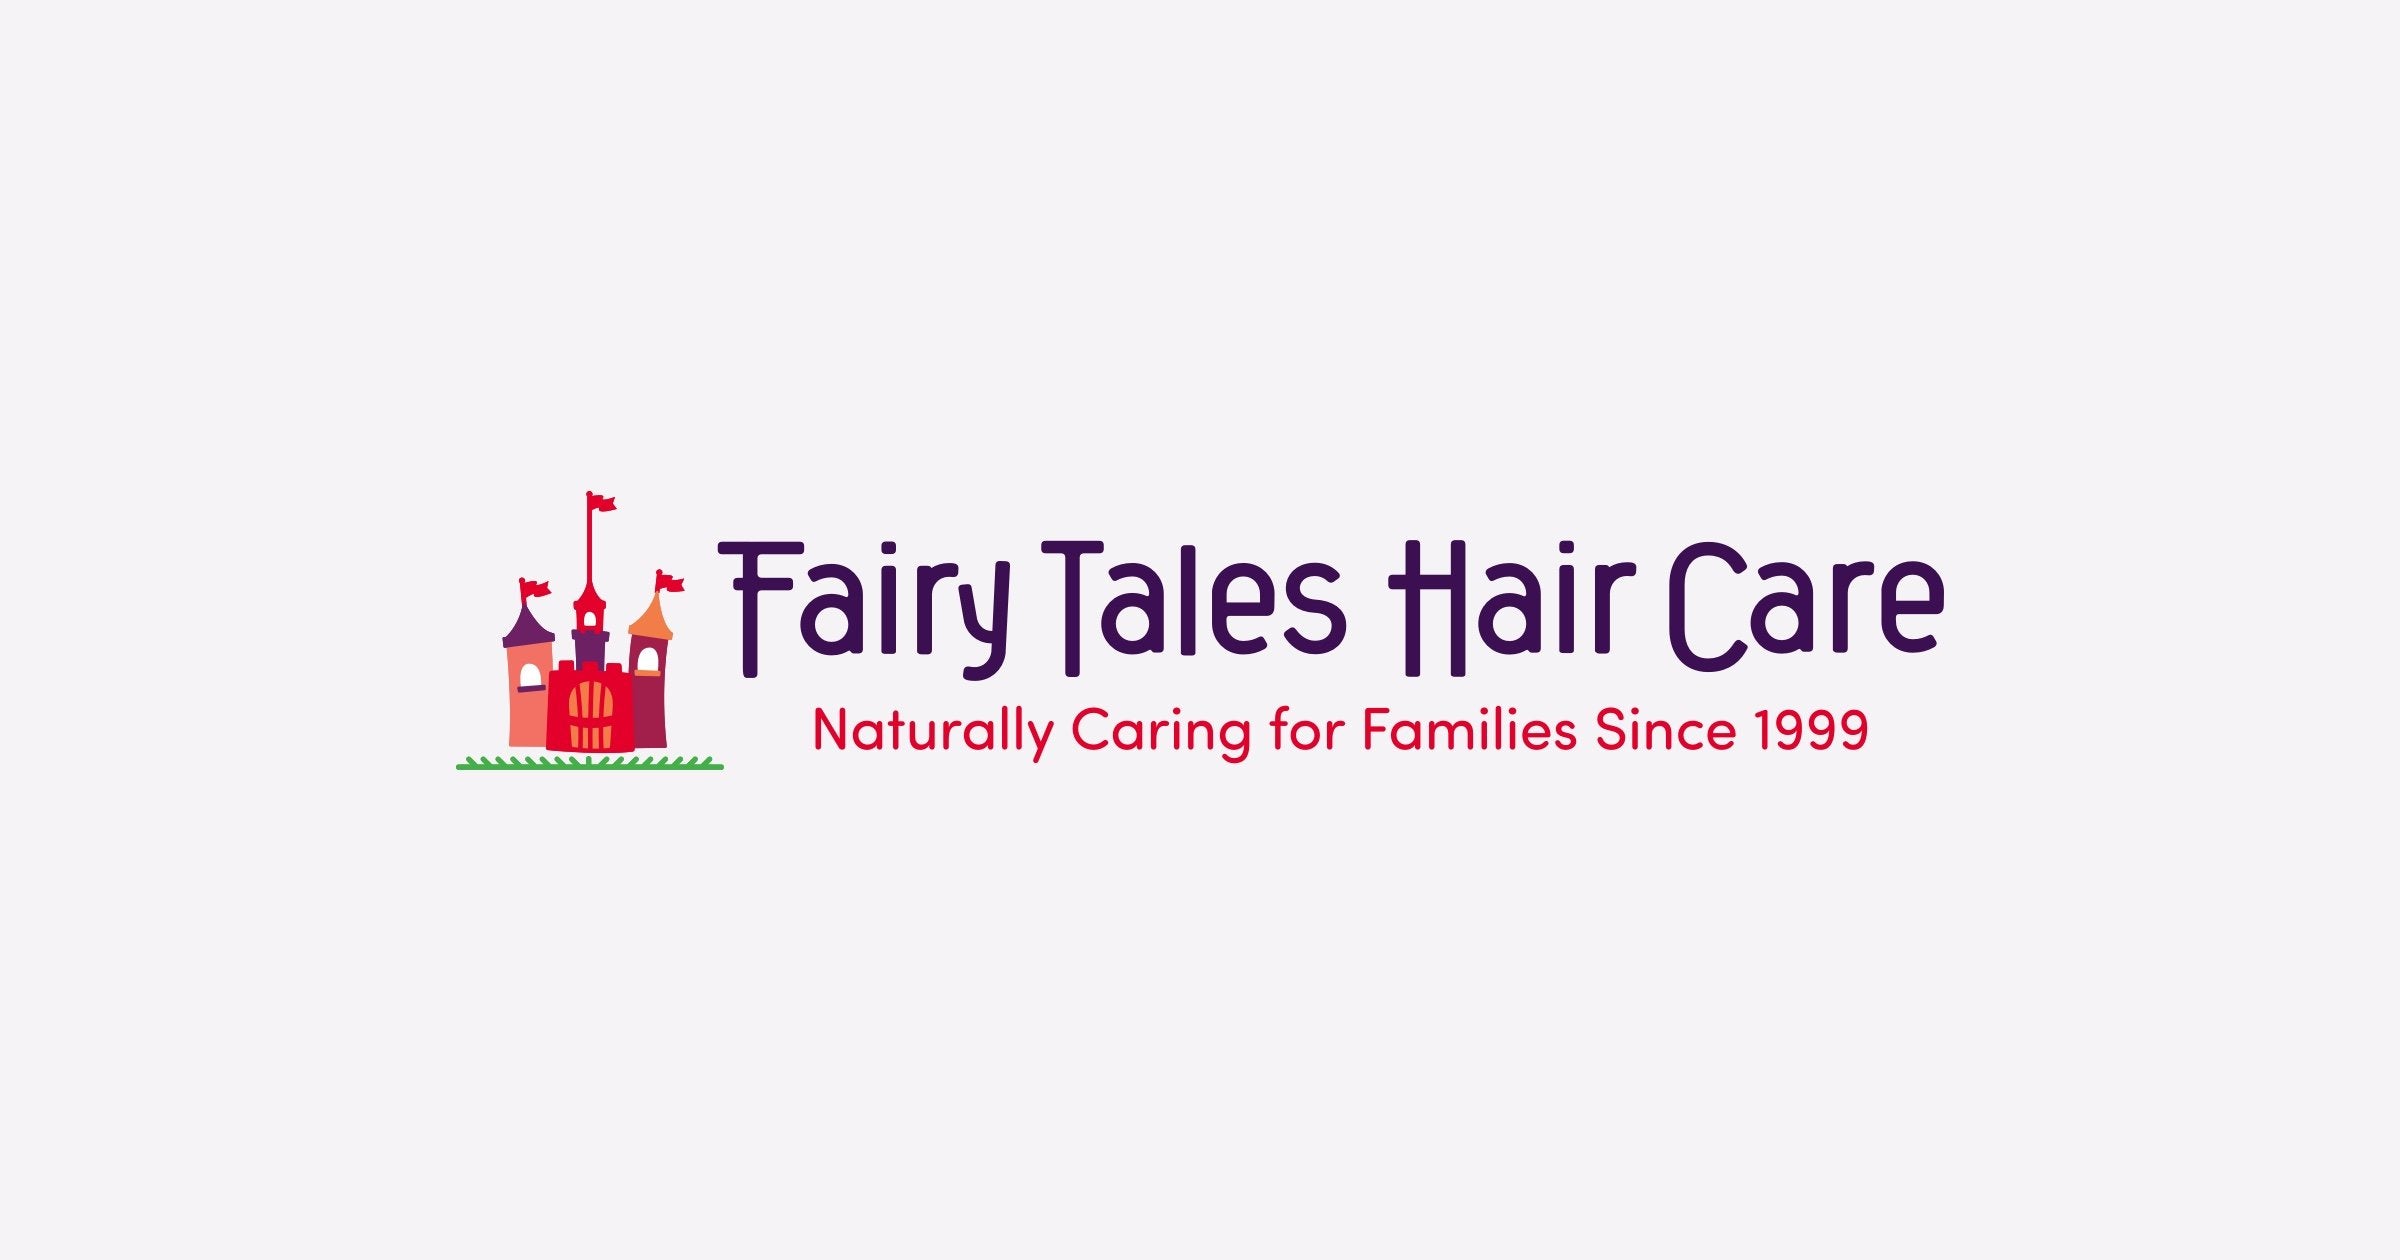 Fairy Tales Hair Care